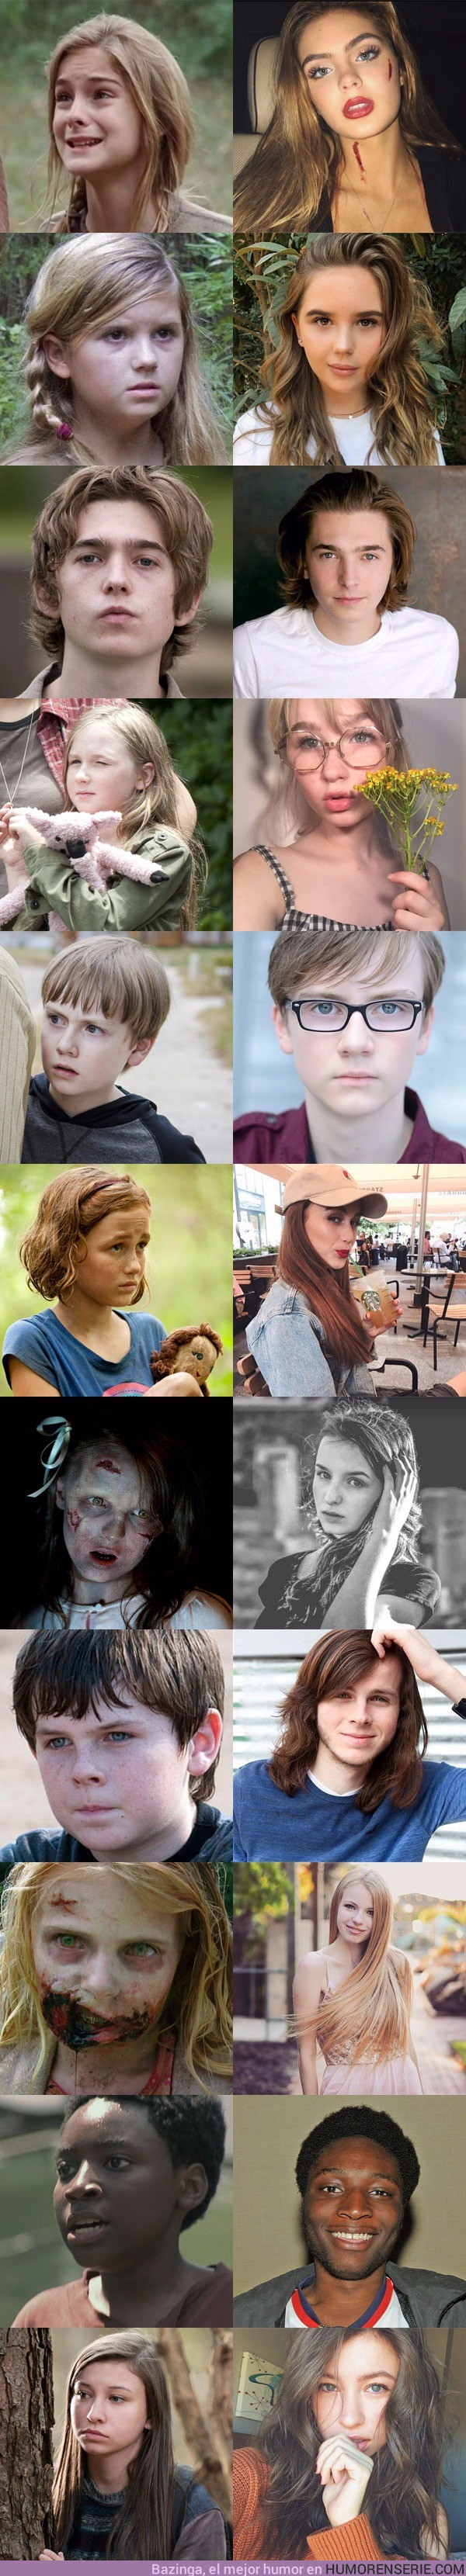 20146 - Galería: Así han crecido los niños que han aparecido en The Walking Dead